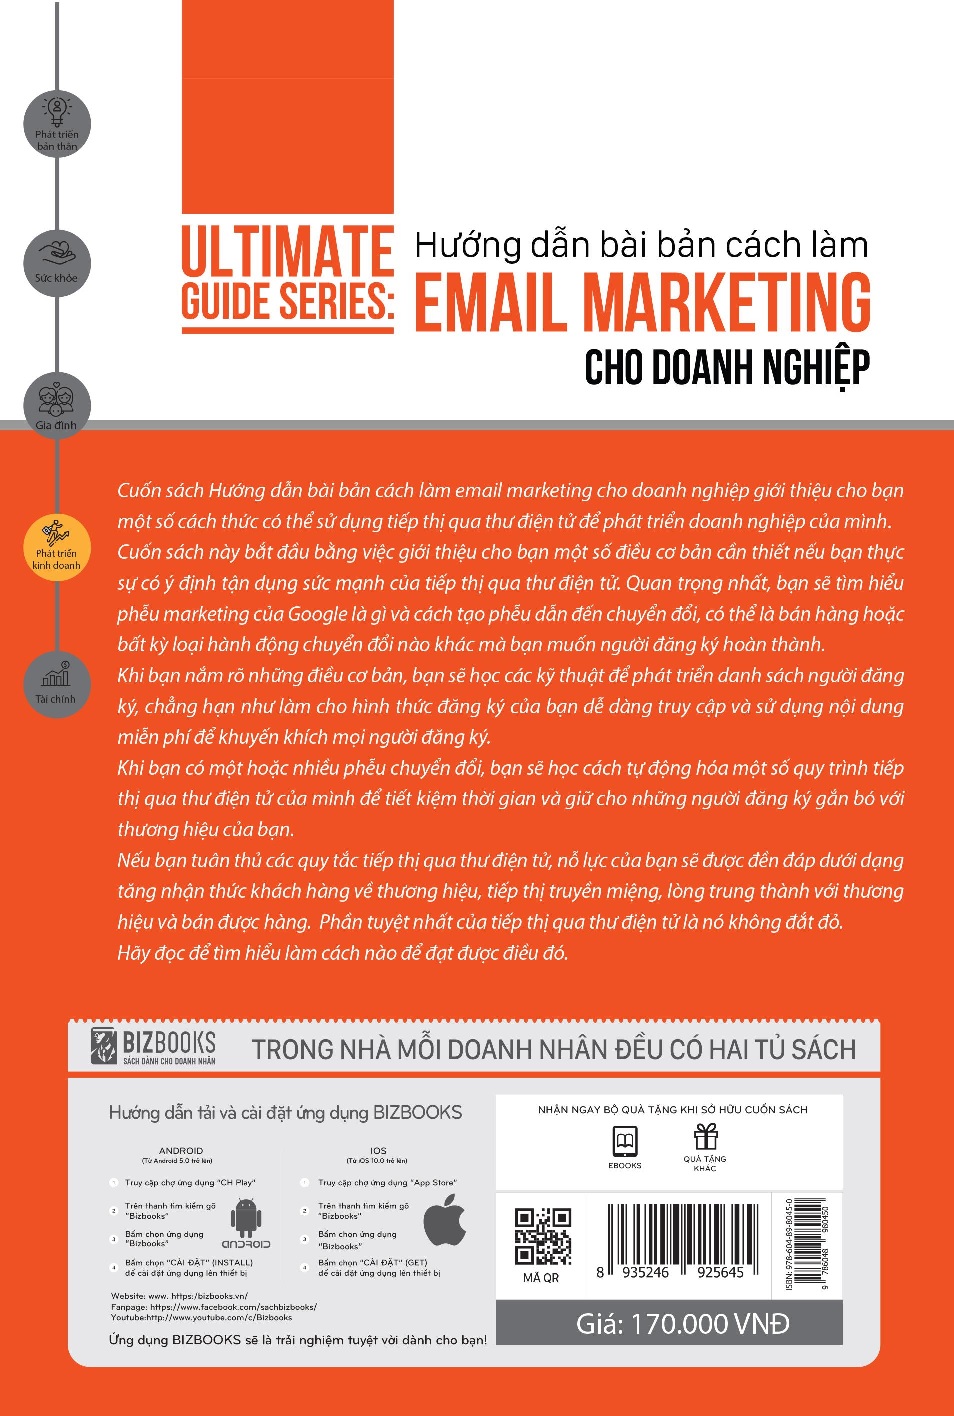 Hướng dẫn bài bản cách làm Email Marketing cho doanh nghiệp | Ultimate Guide Series 2